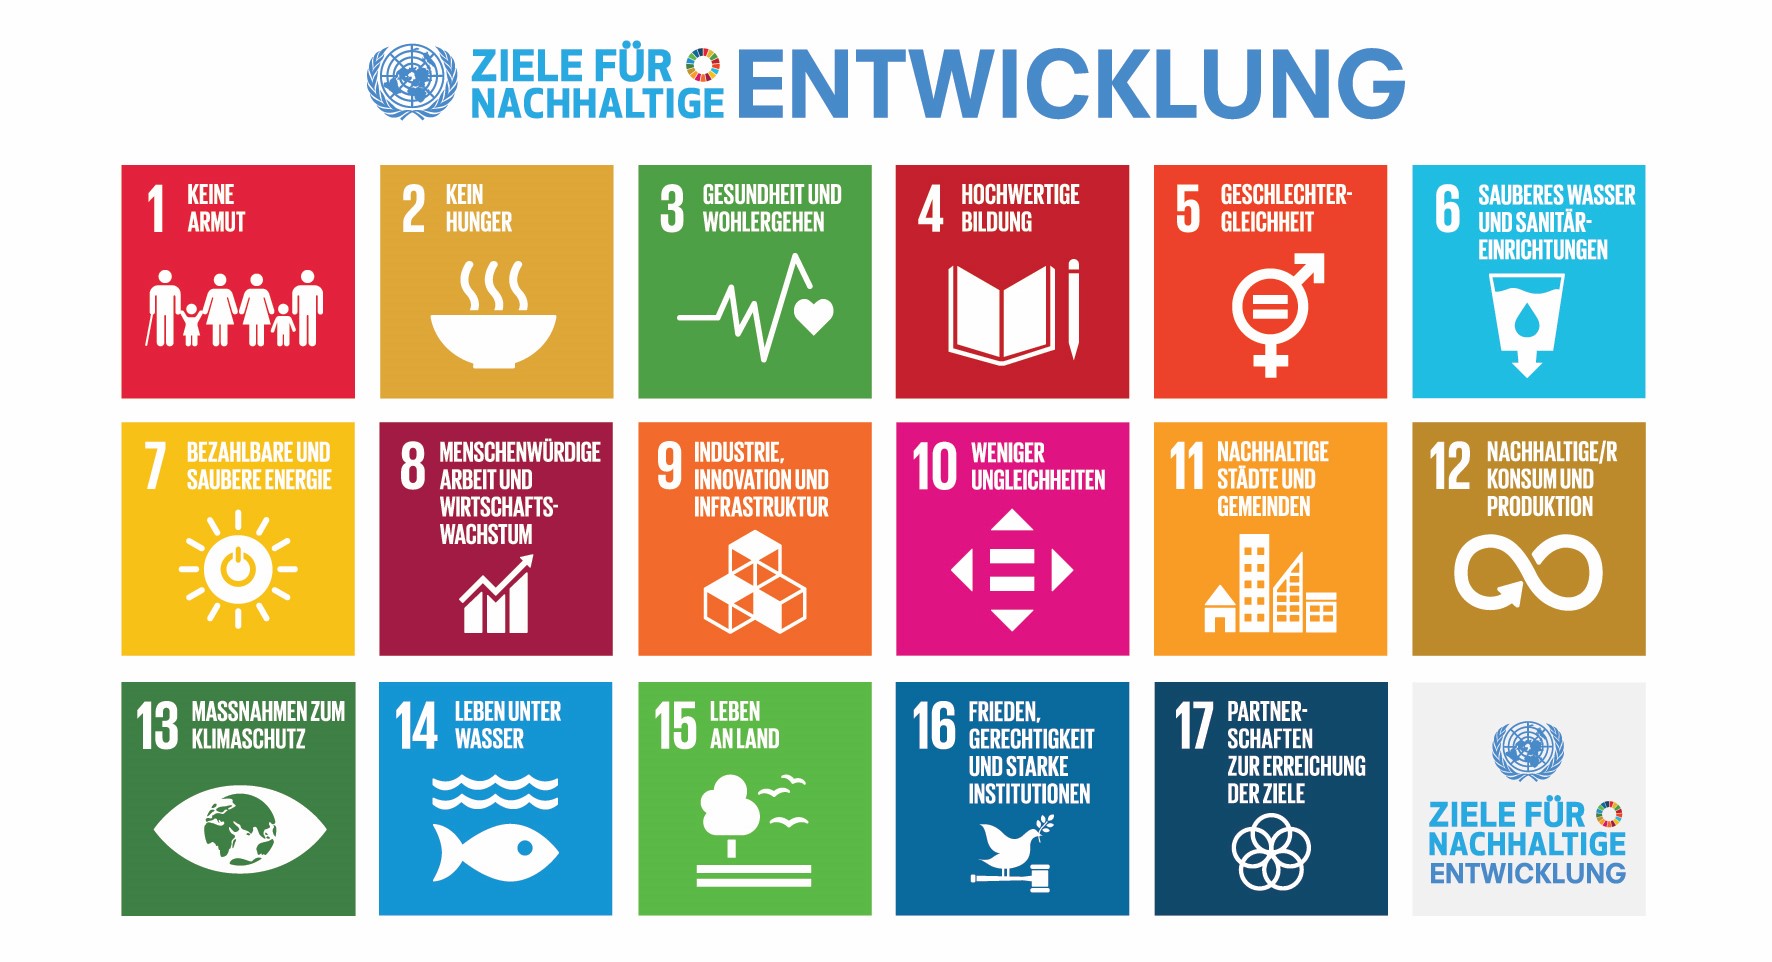 Die Klimawirkstatt richtet die Beratung auf die Nachhaltigkeitsziele der Schweiz und die 17 Sustainable Development Goals der UN aus